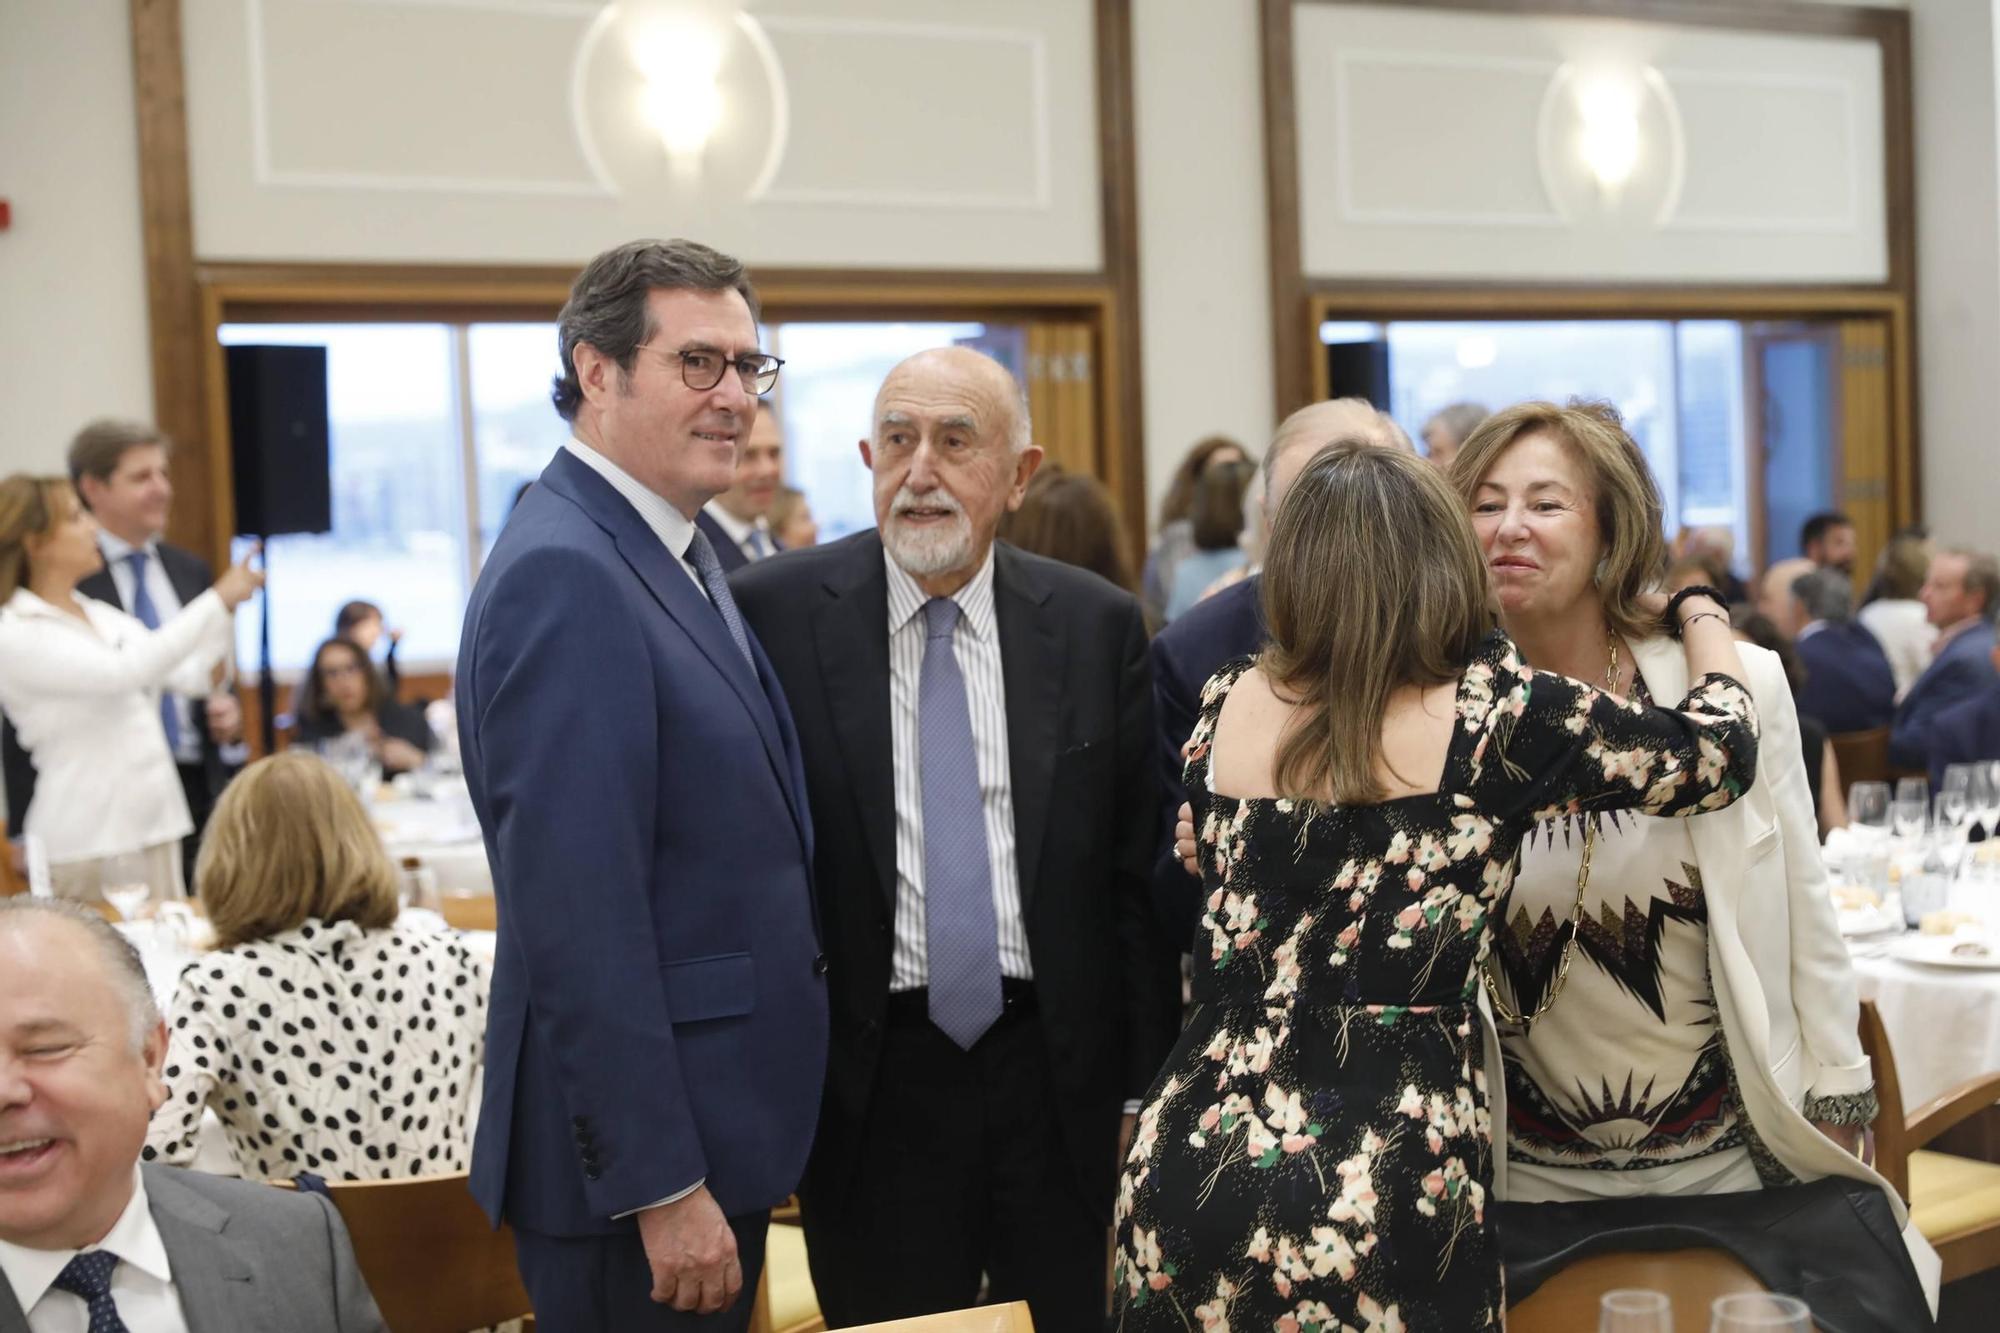 Obdulia Fernández y Víctor Madera reciben el premio "Álvarez Margaride": "Un ejemplo singular de generación de valor en España"